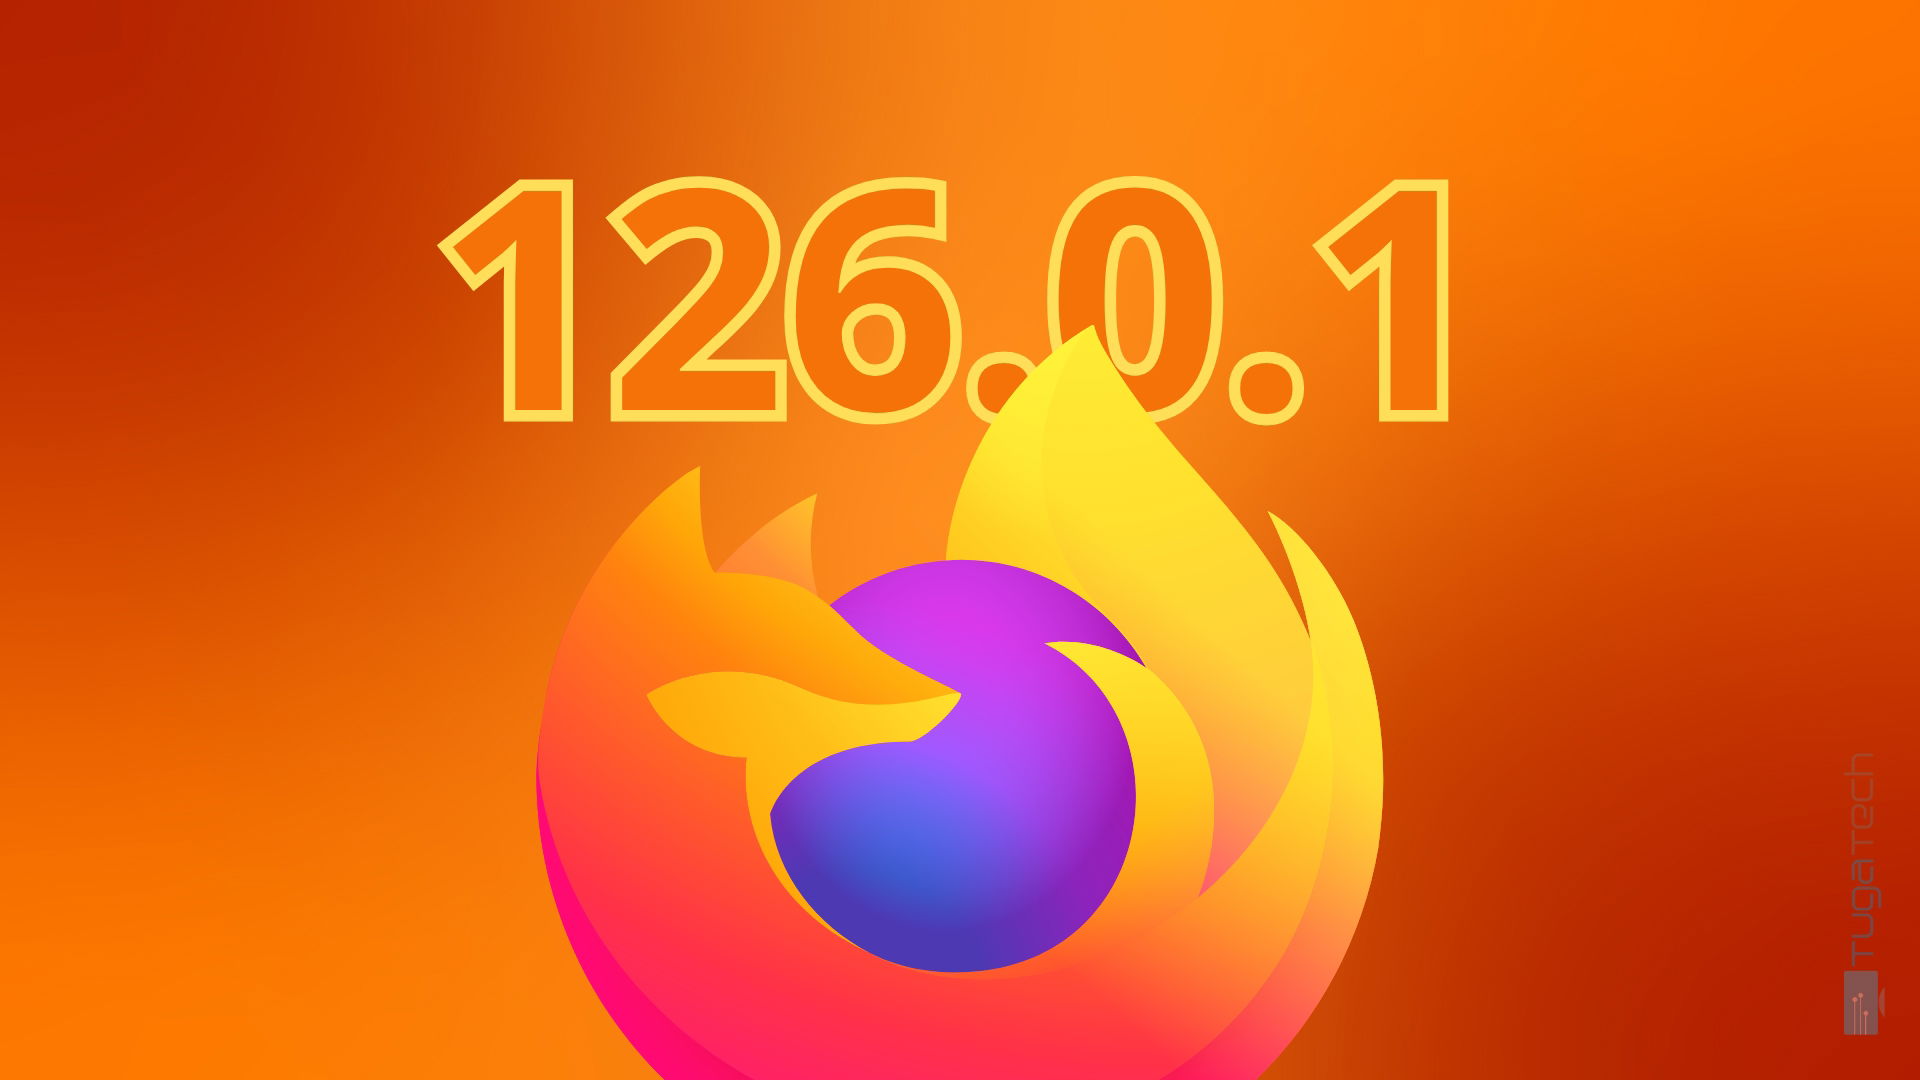 Firefox 126.0.1